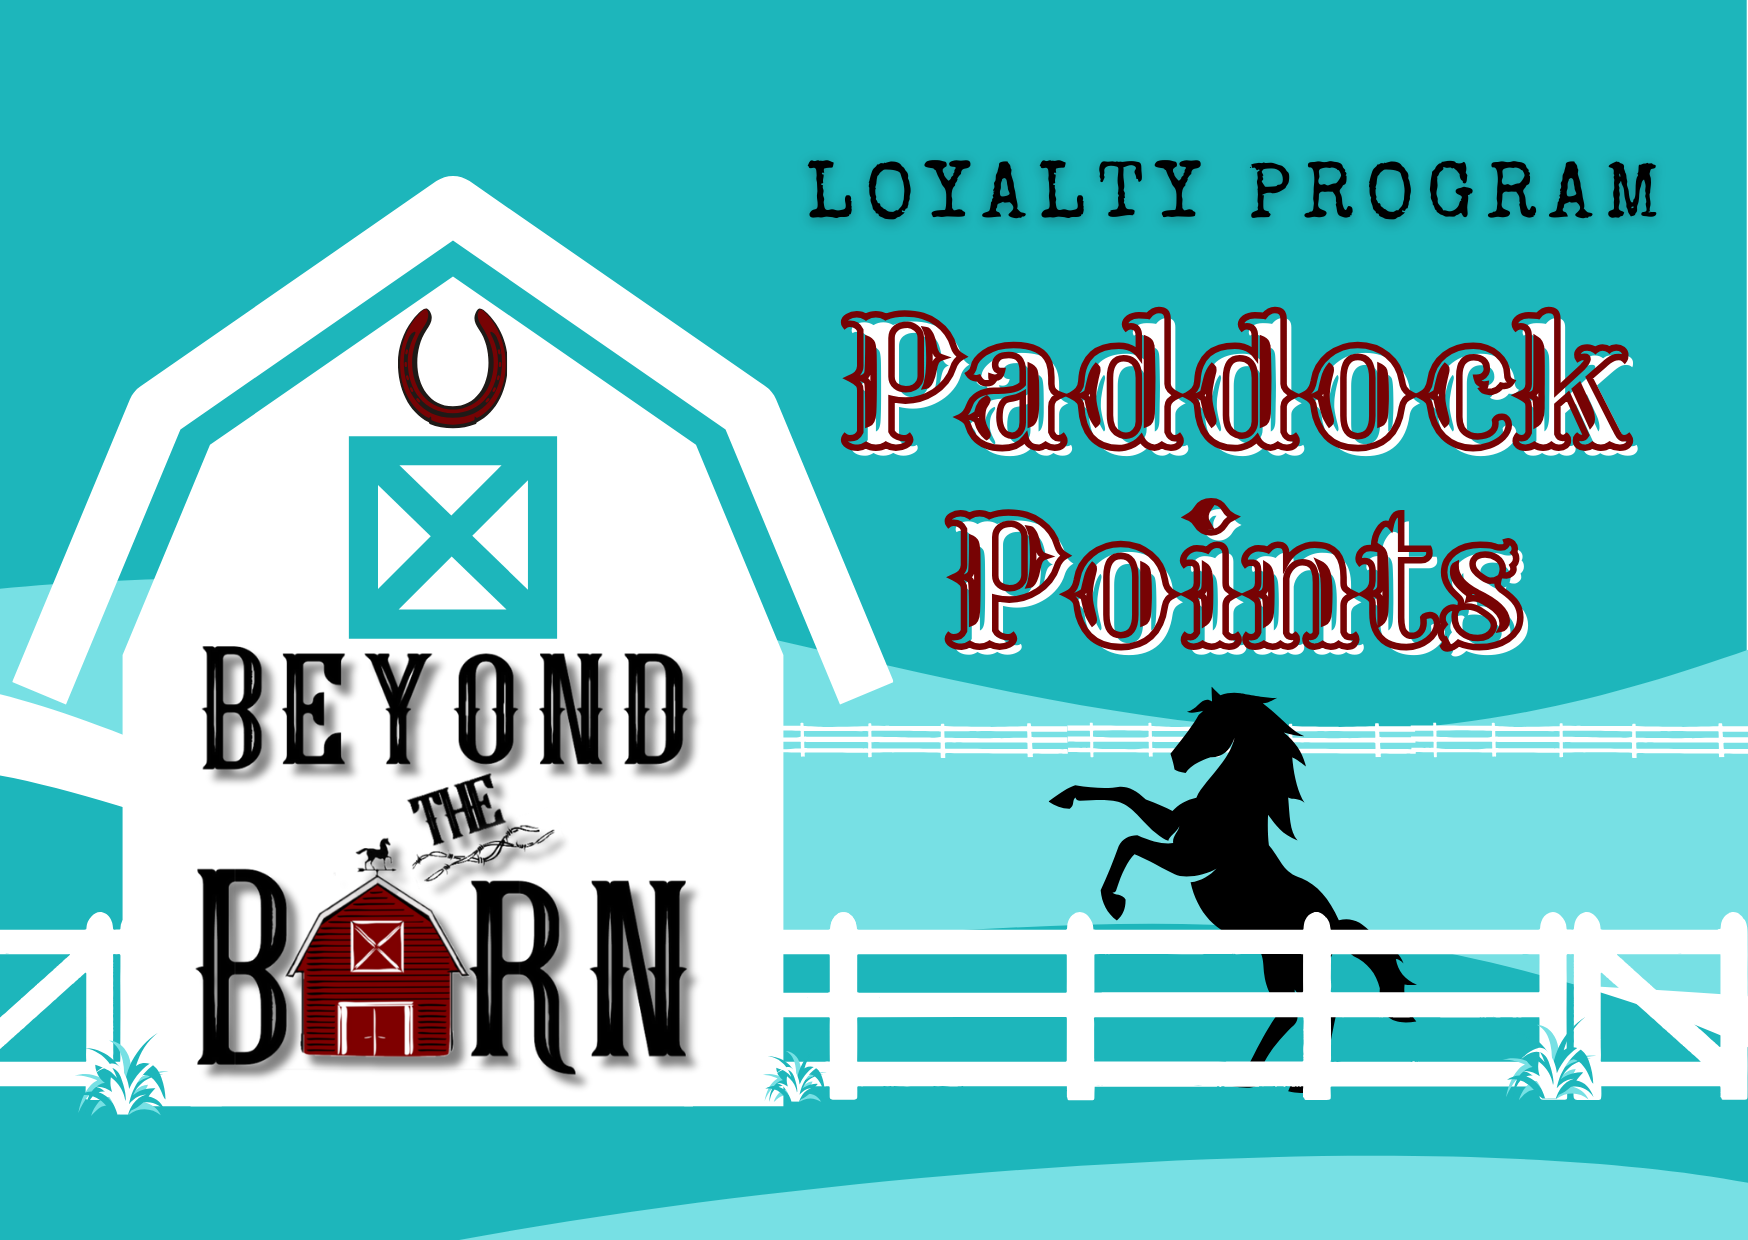 Loyalty Program Paddock Points